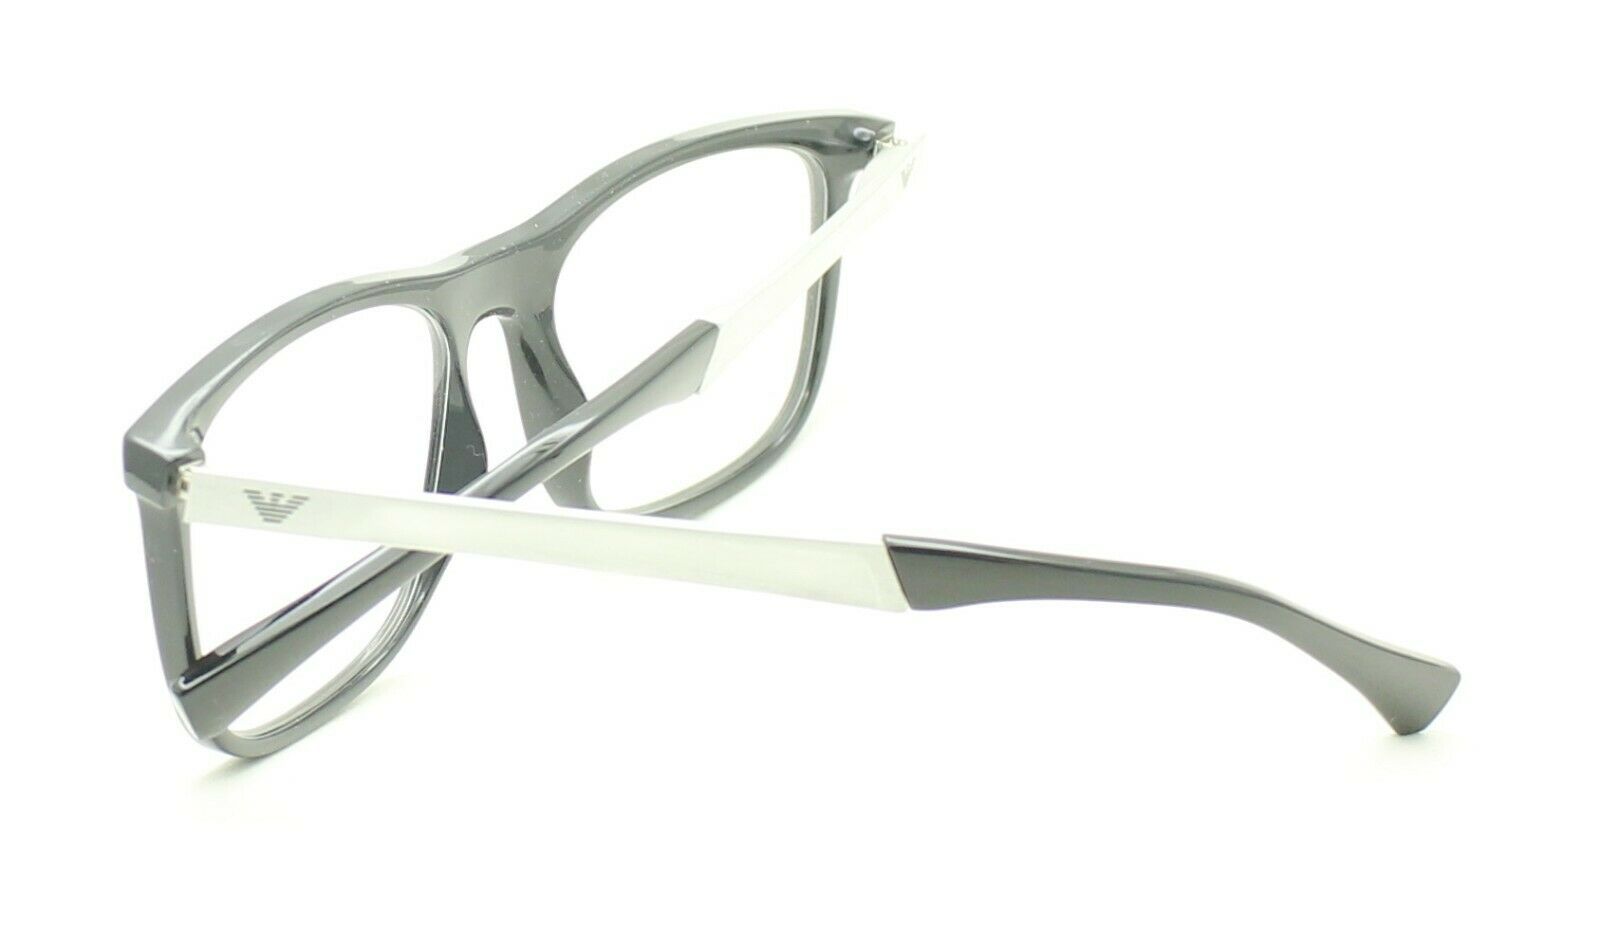 EMPORIO ARMANI EA 3170 5001 55mm Eyewear FRAMES RX Optical Glasses EyeglassesNew